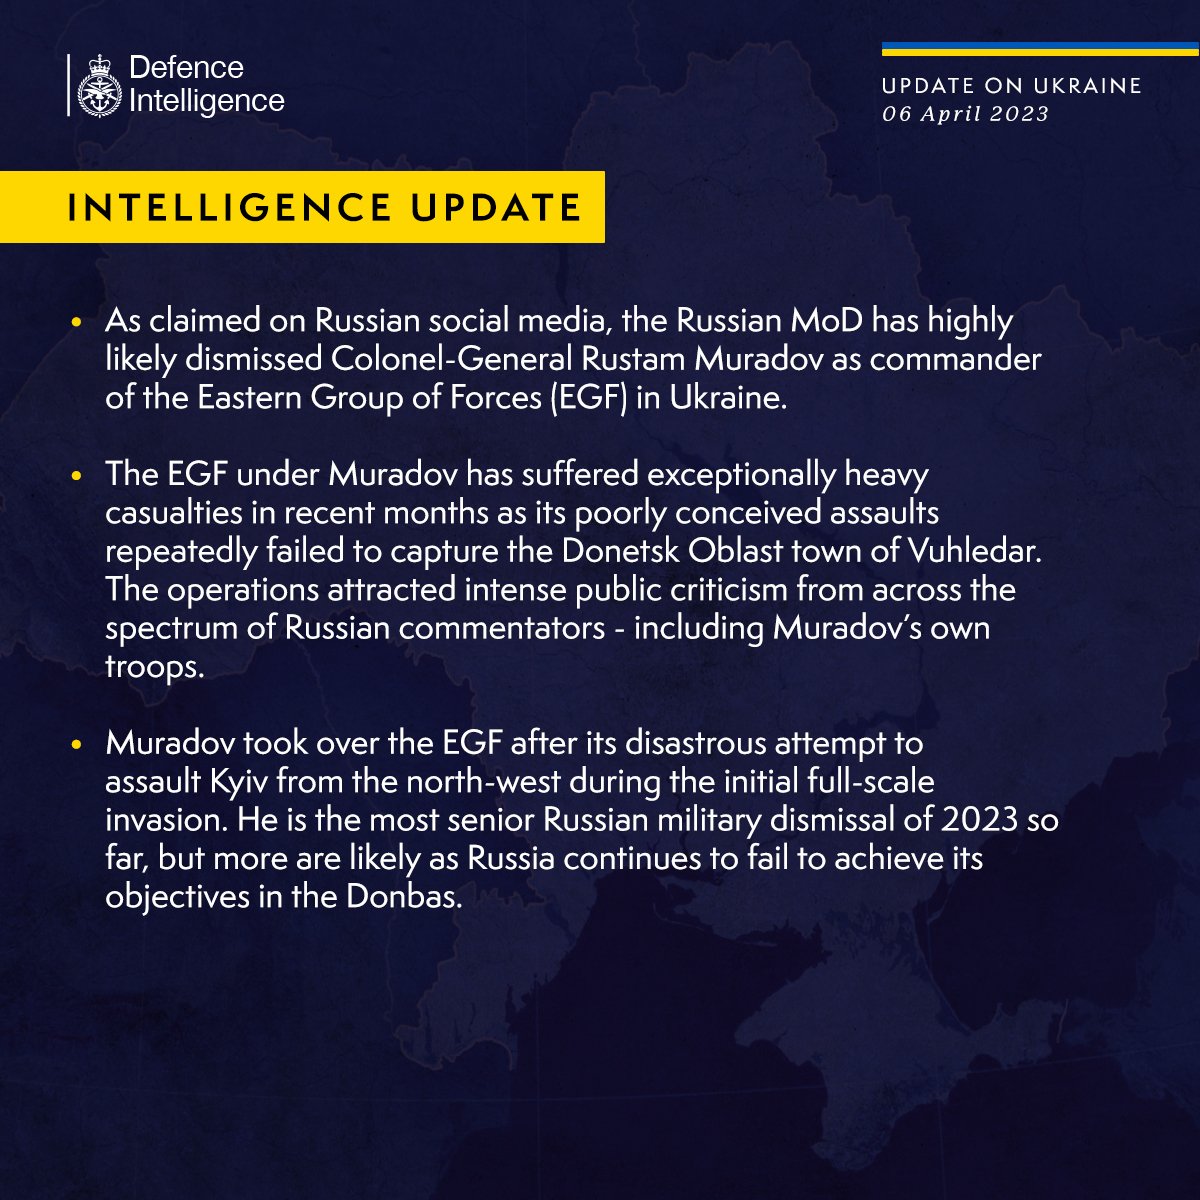 Снятие с должности Мурадова только начало: британская разведка озвучила план Кремля